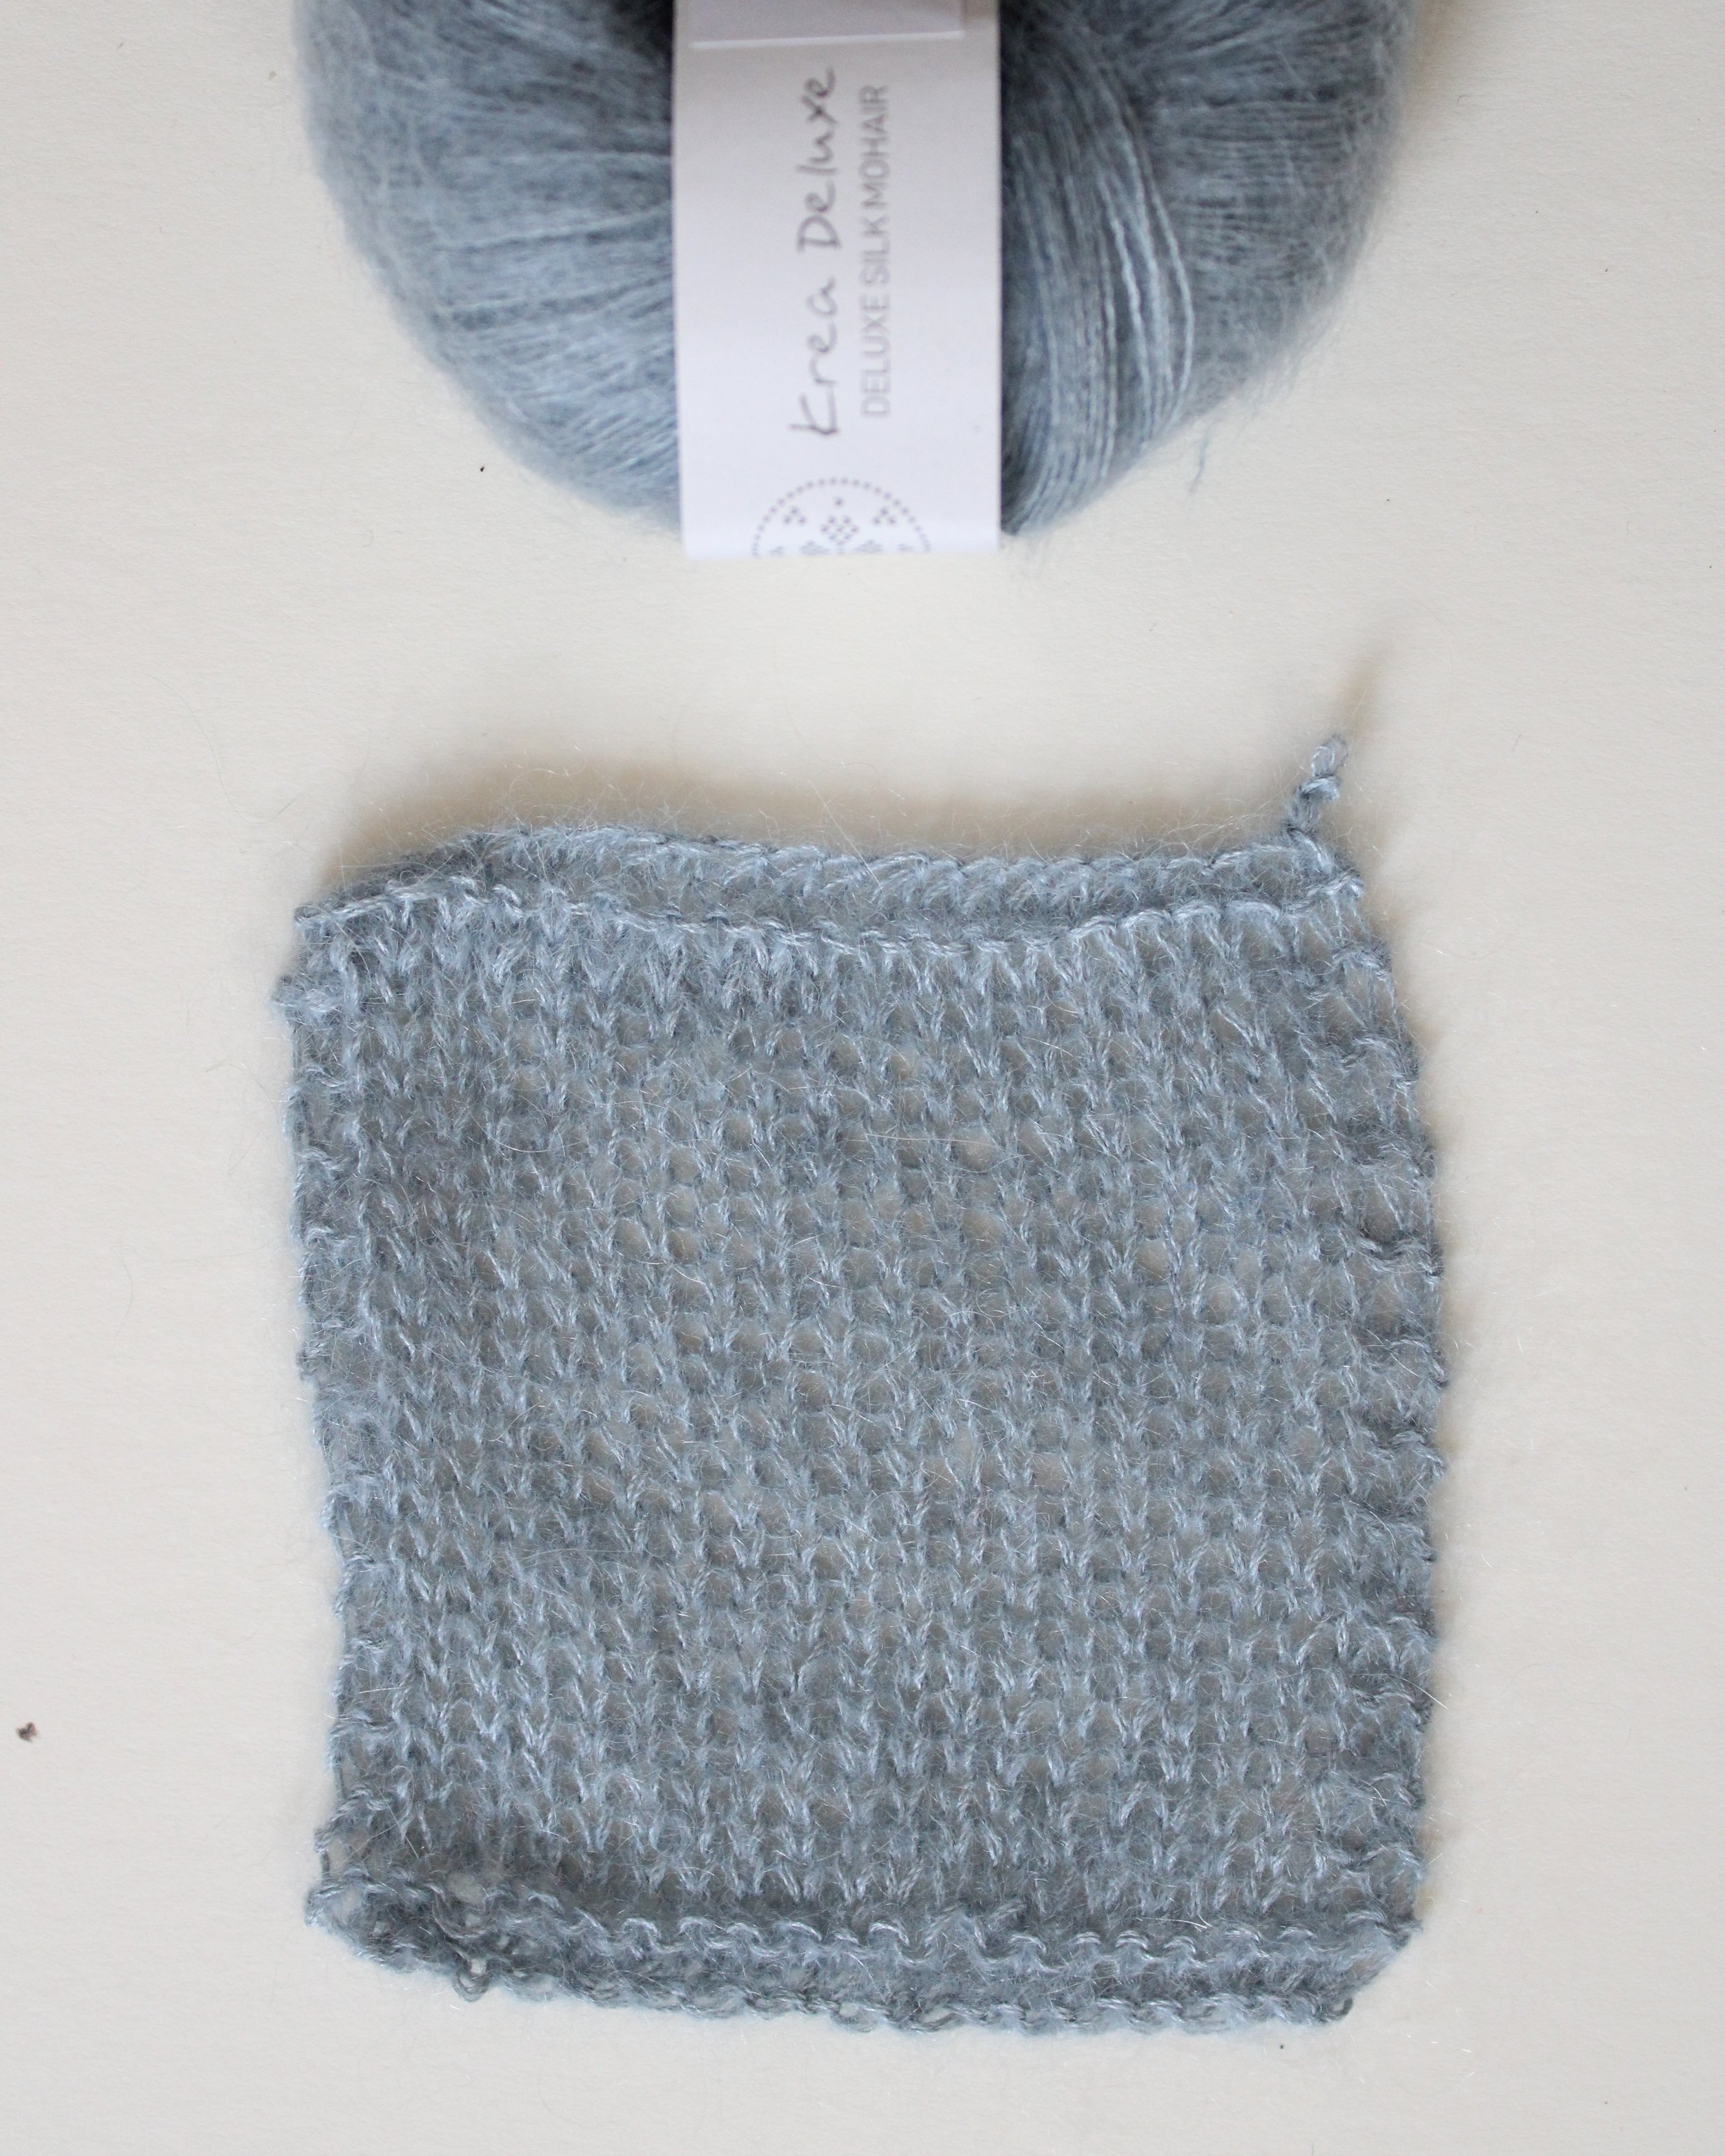 Mohair Knitting Yarn